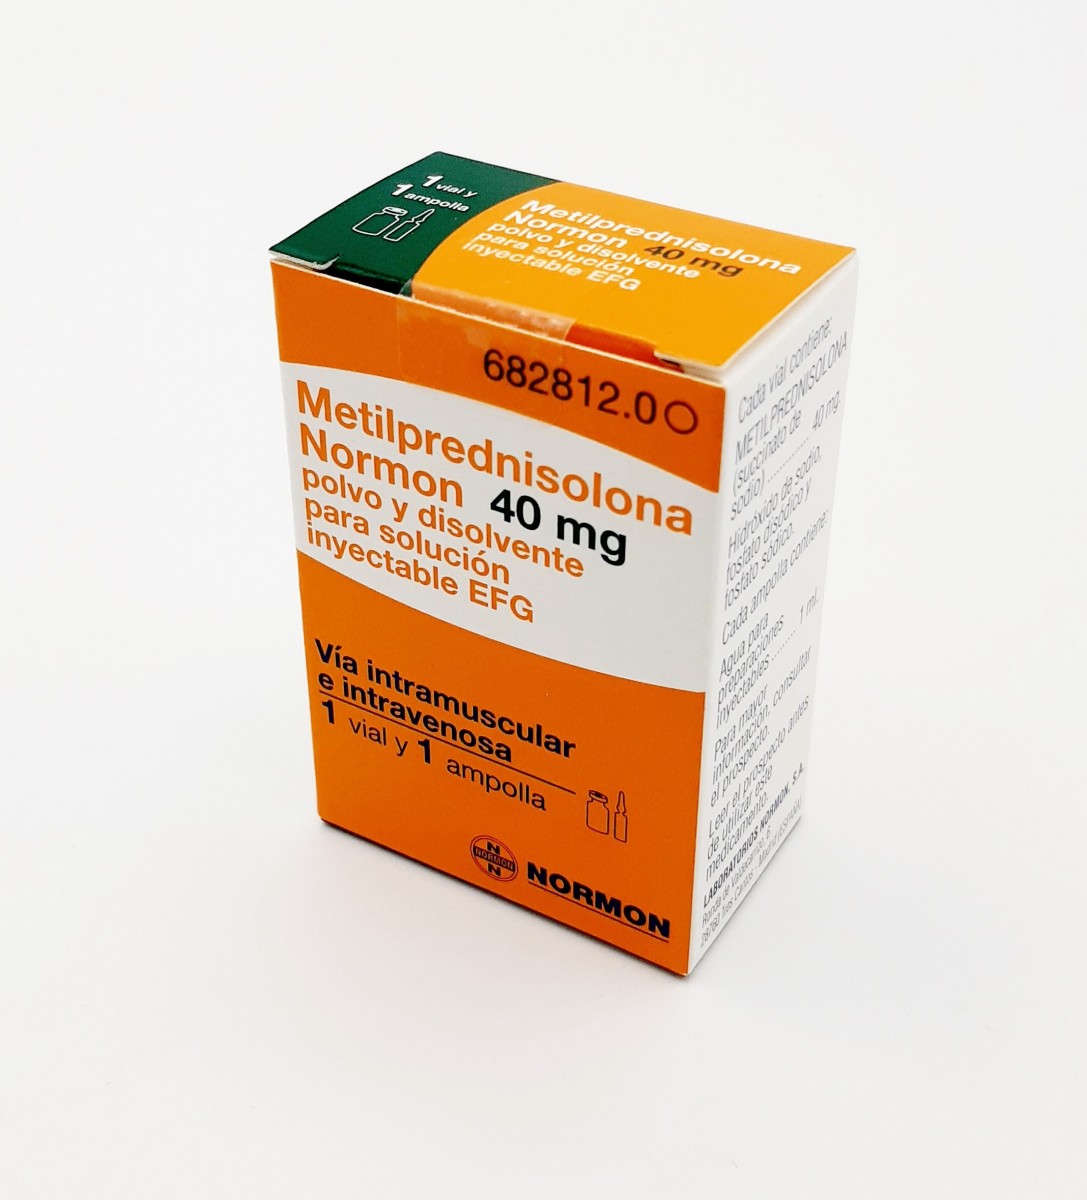 METILPREDNISOLONA NORMON 40 mg POLVO Y DISOLVENTE PARA SOLUCION INYECTABLE EFG , 3 viales + 3 ampollas de disolvente fotografía del envase.